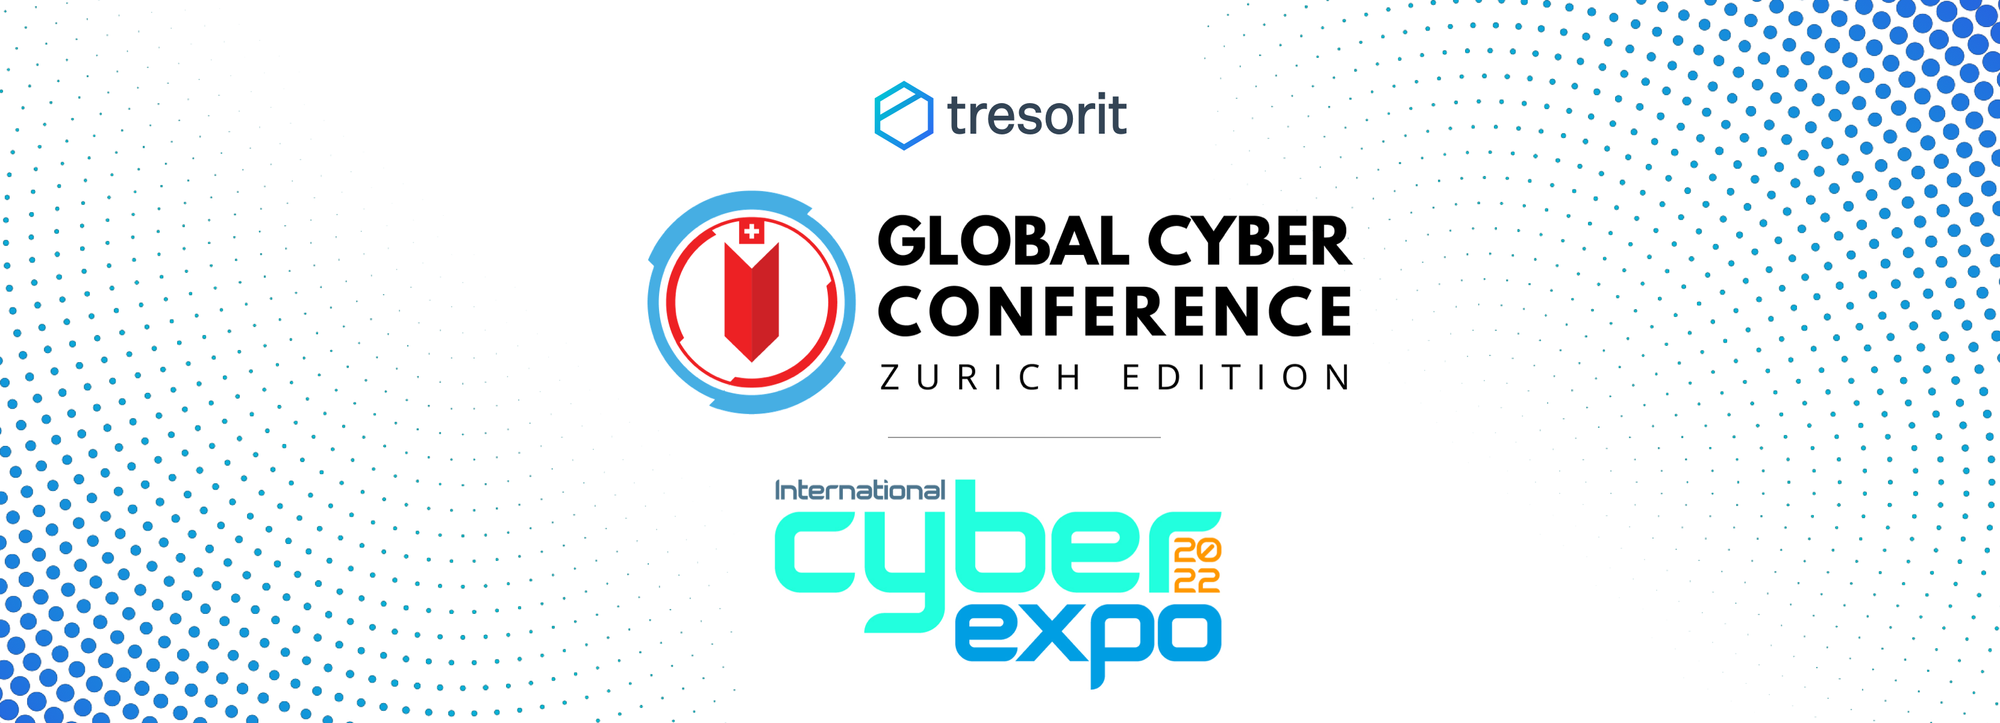 Auftakt der Veranstaltungssaison: Tresorit nimmt an Global Cyber Conference und International Cyber Expo teil